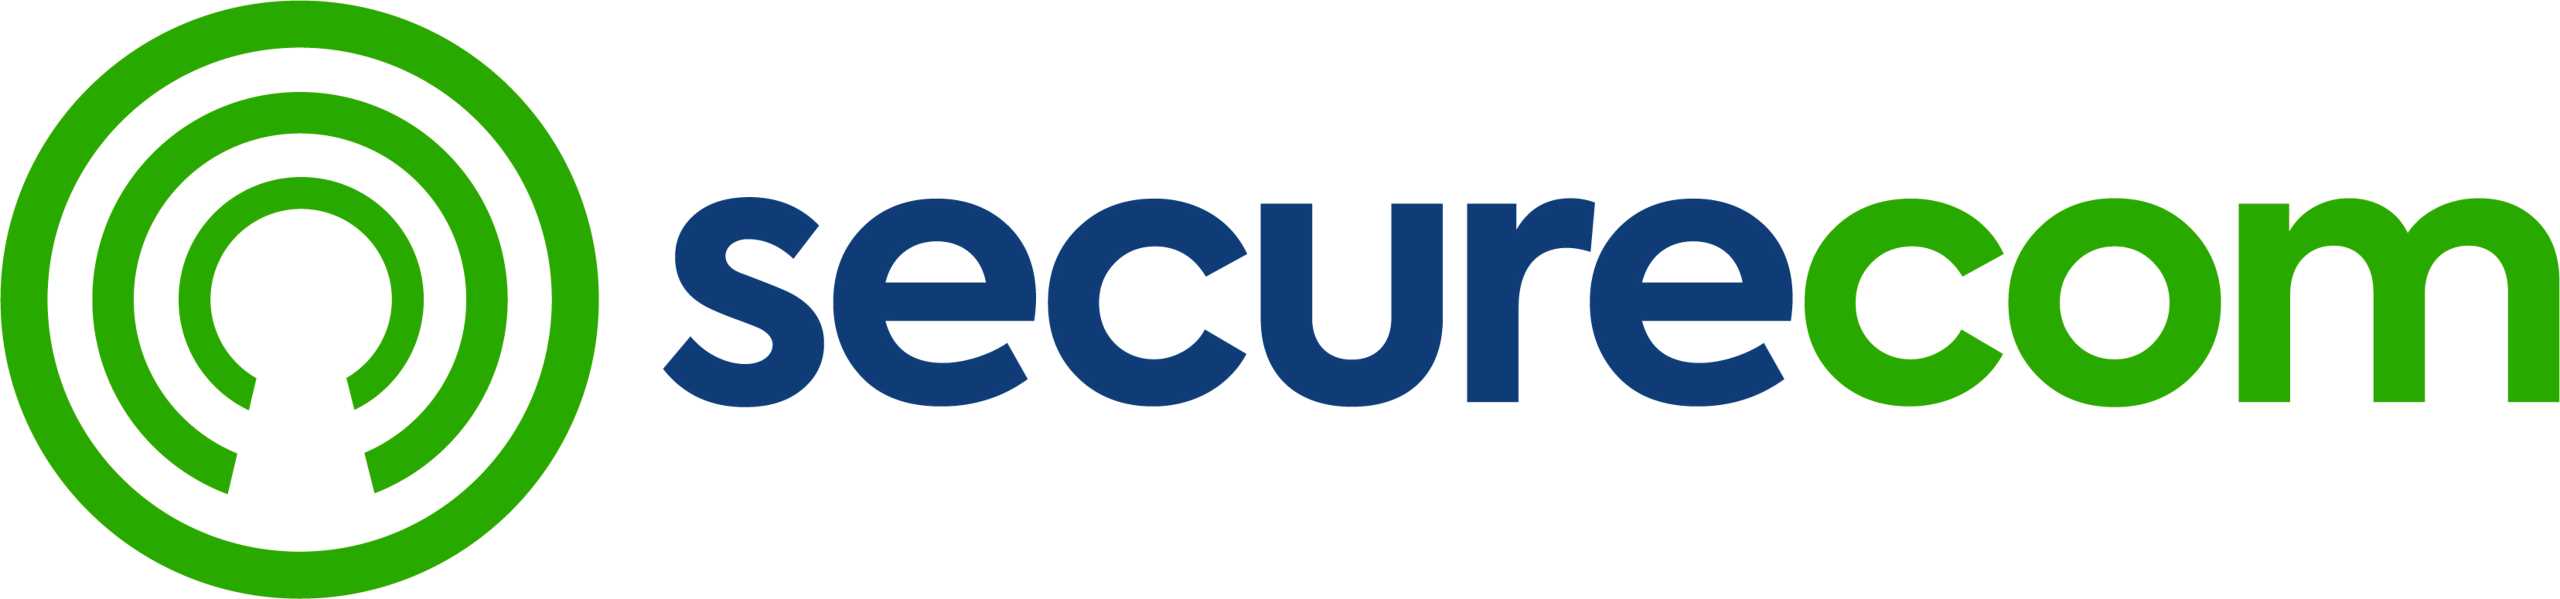 SecureCom logo_rgb